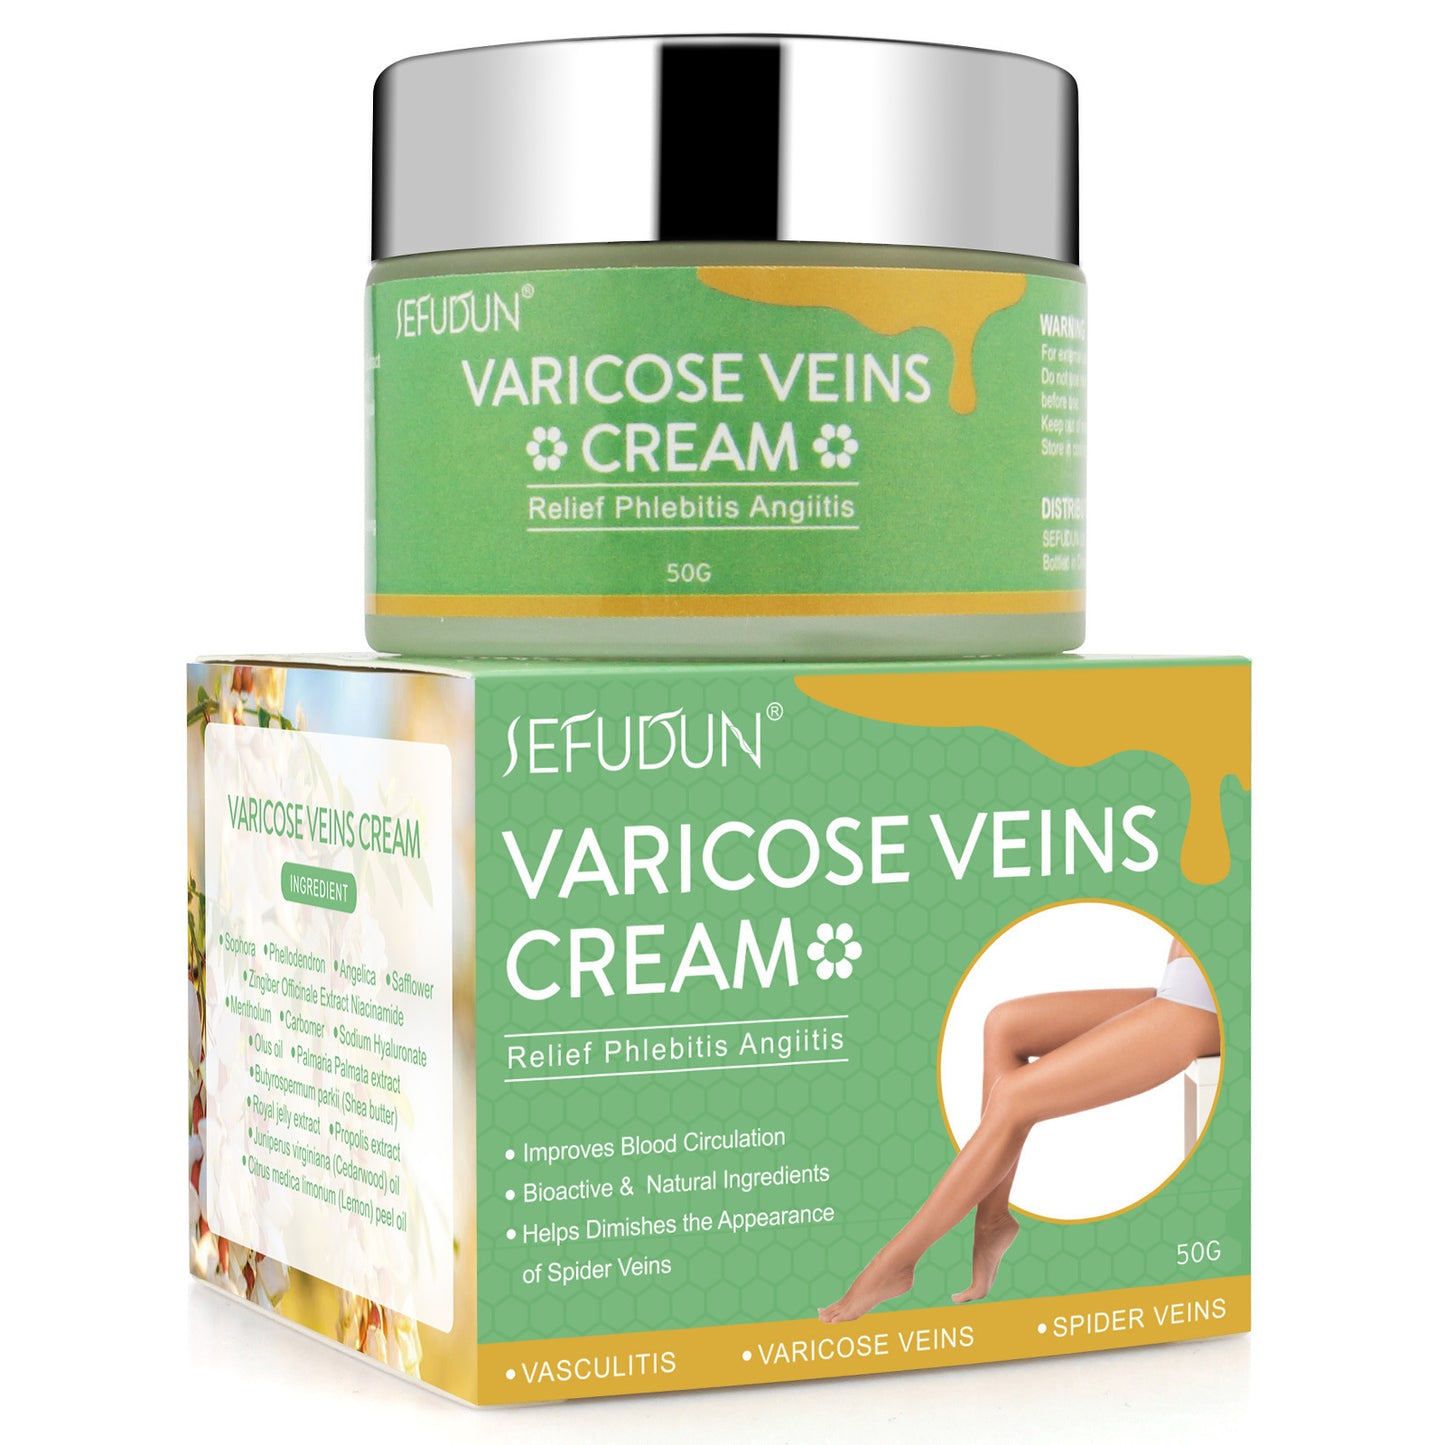 SEFUDUN Varicose Vein Cream